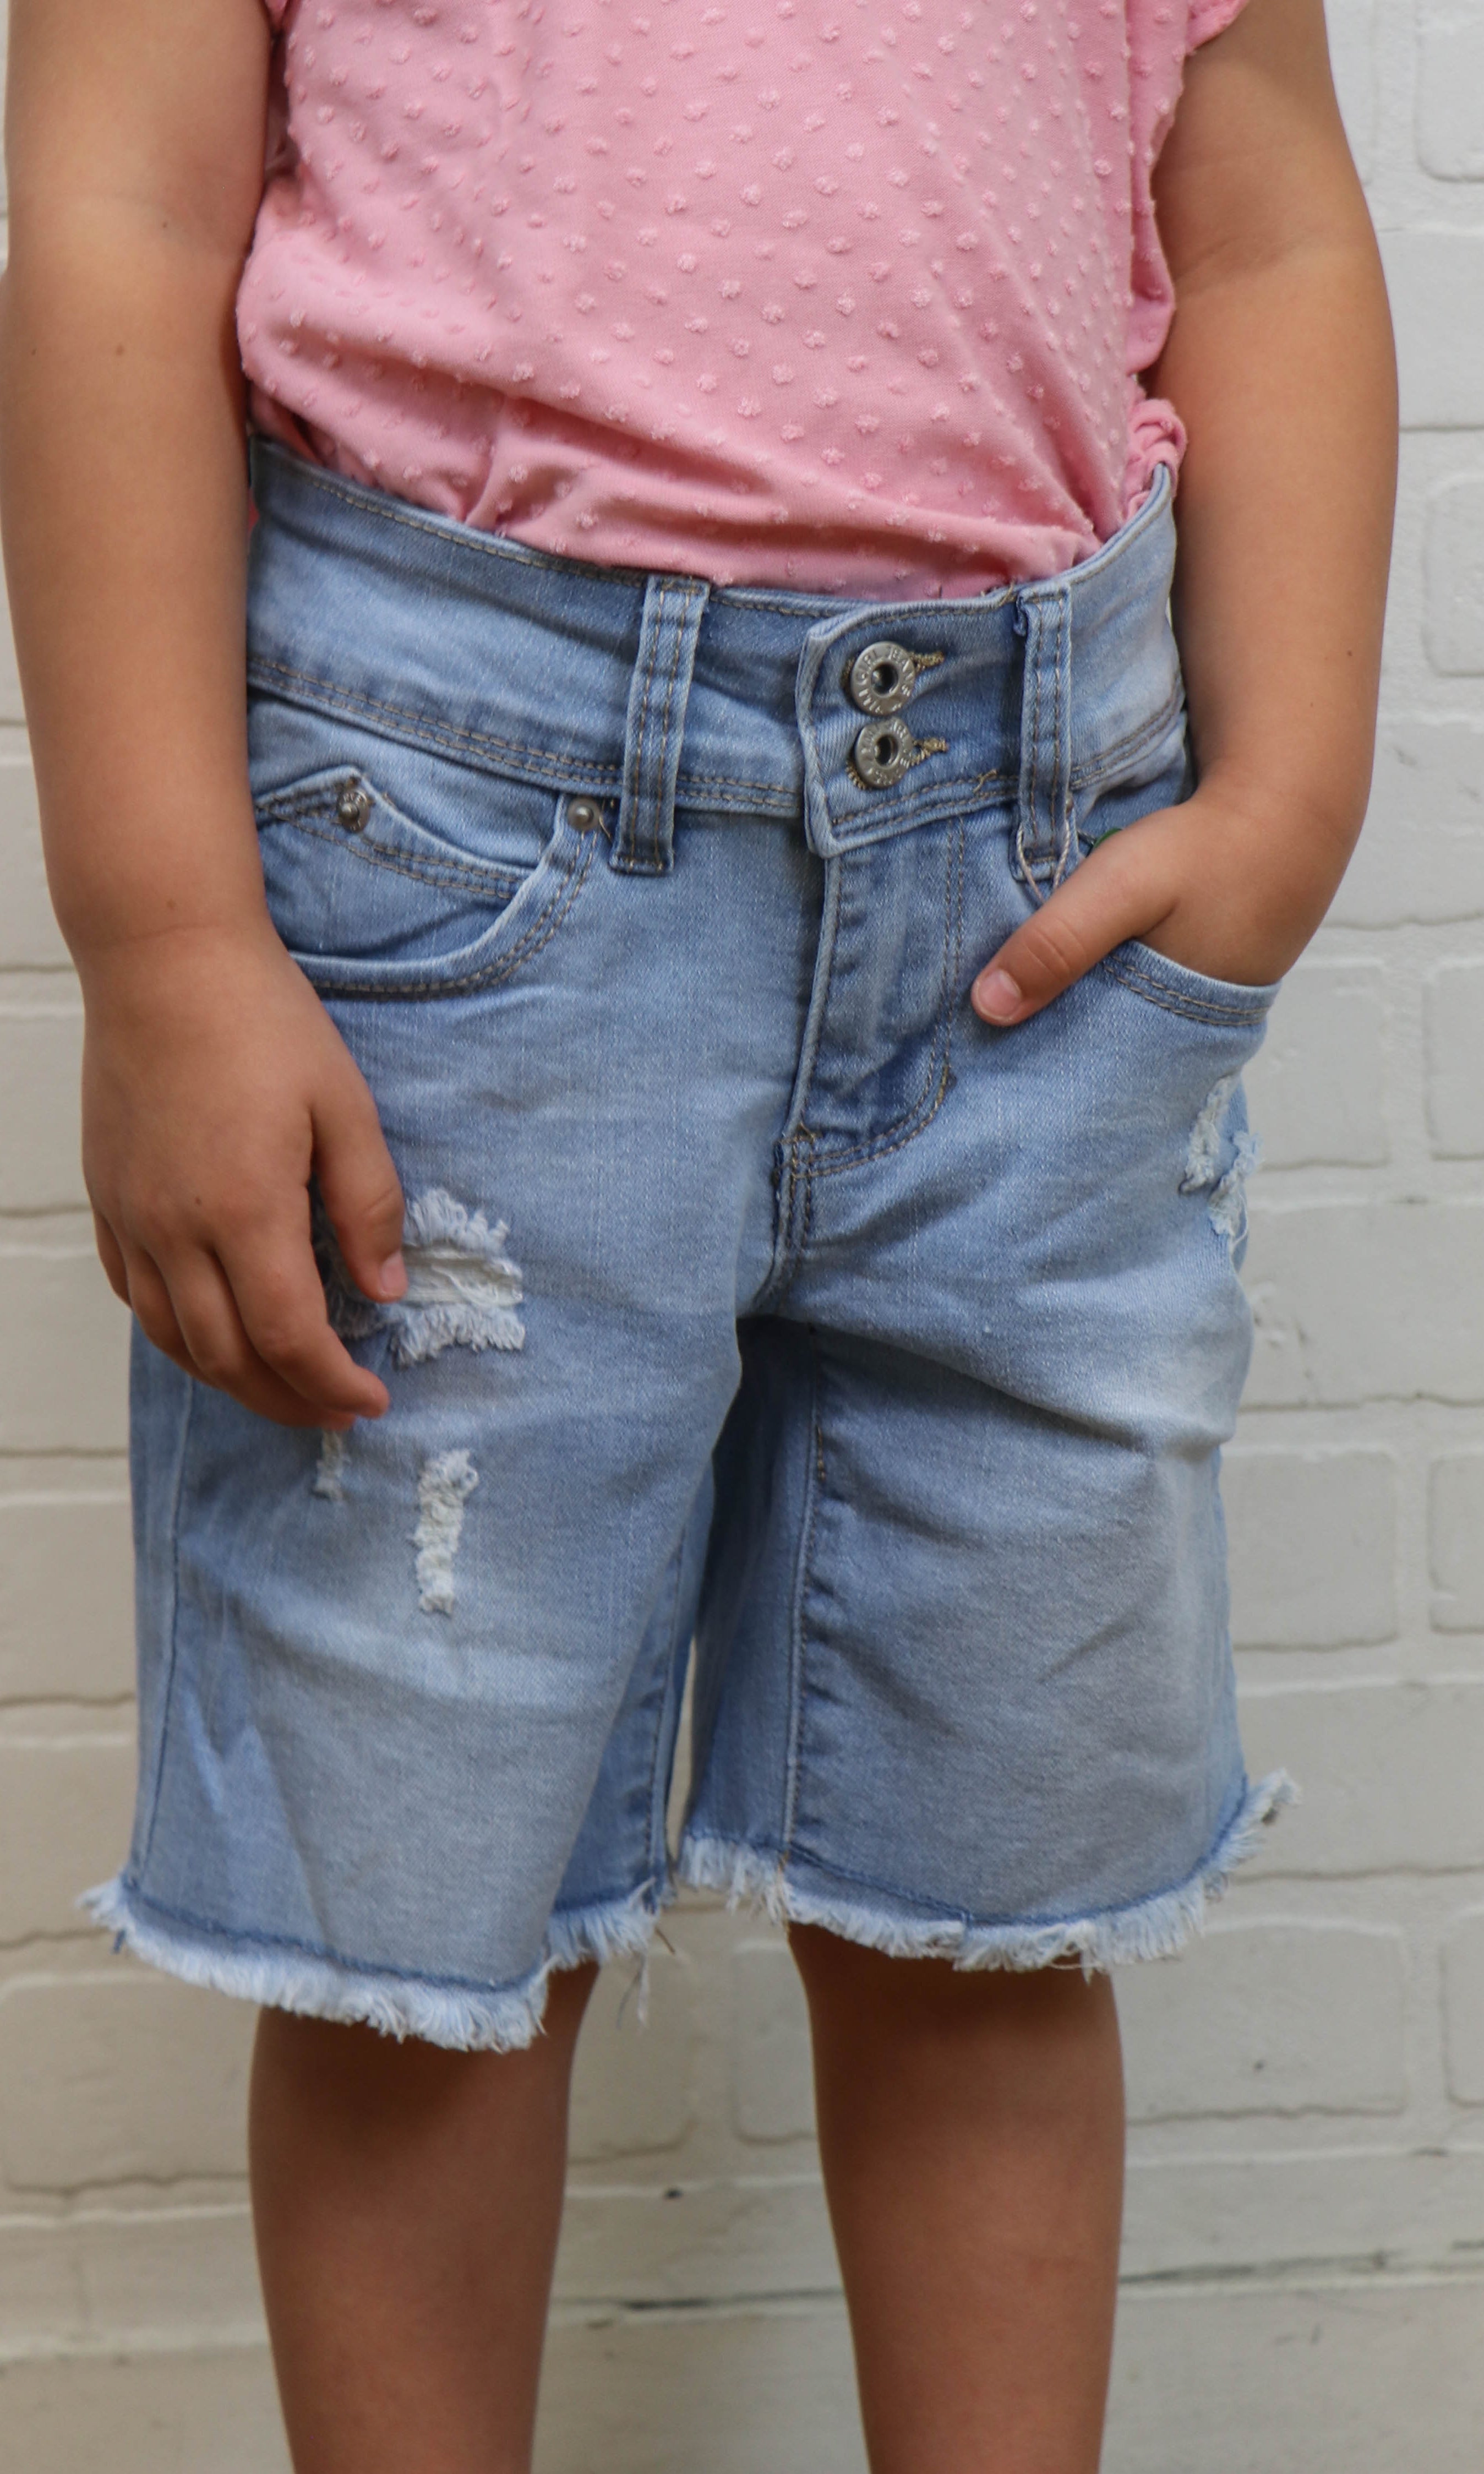 Girls Bike Short Jeans - Ripped Light Wash    Pants YMI Jeanswear- Tilden Co.